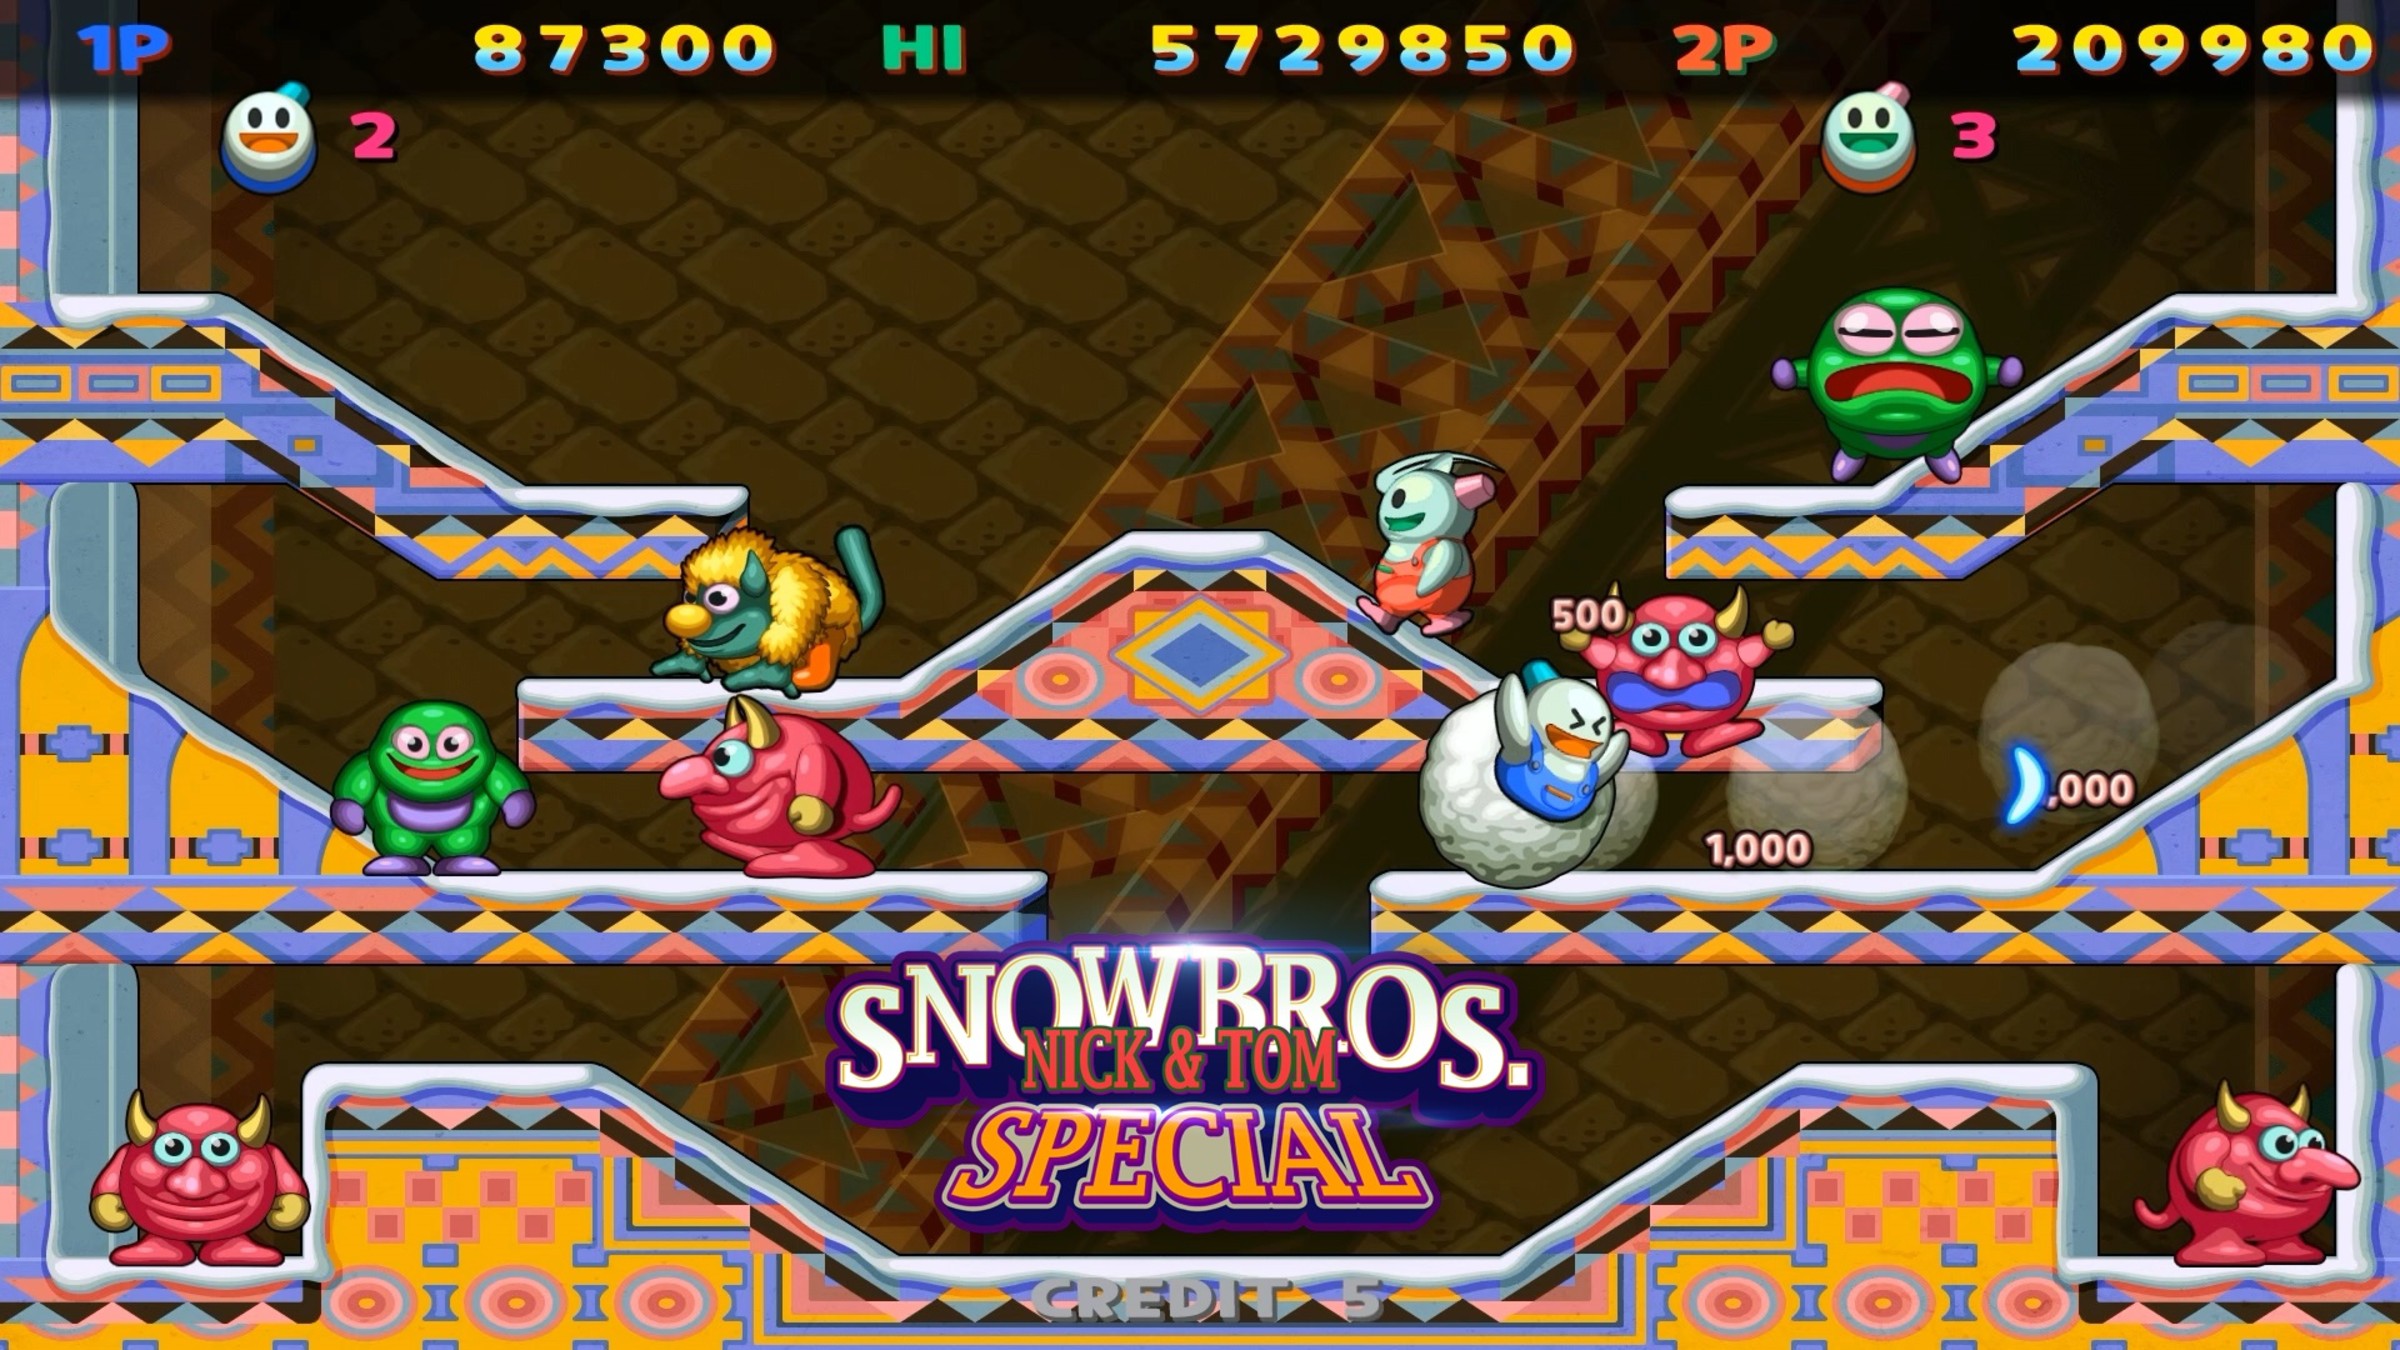 SNOW BROS. SPECIAL for Nintendo Switch - Nintendo Official Site